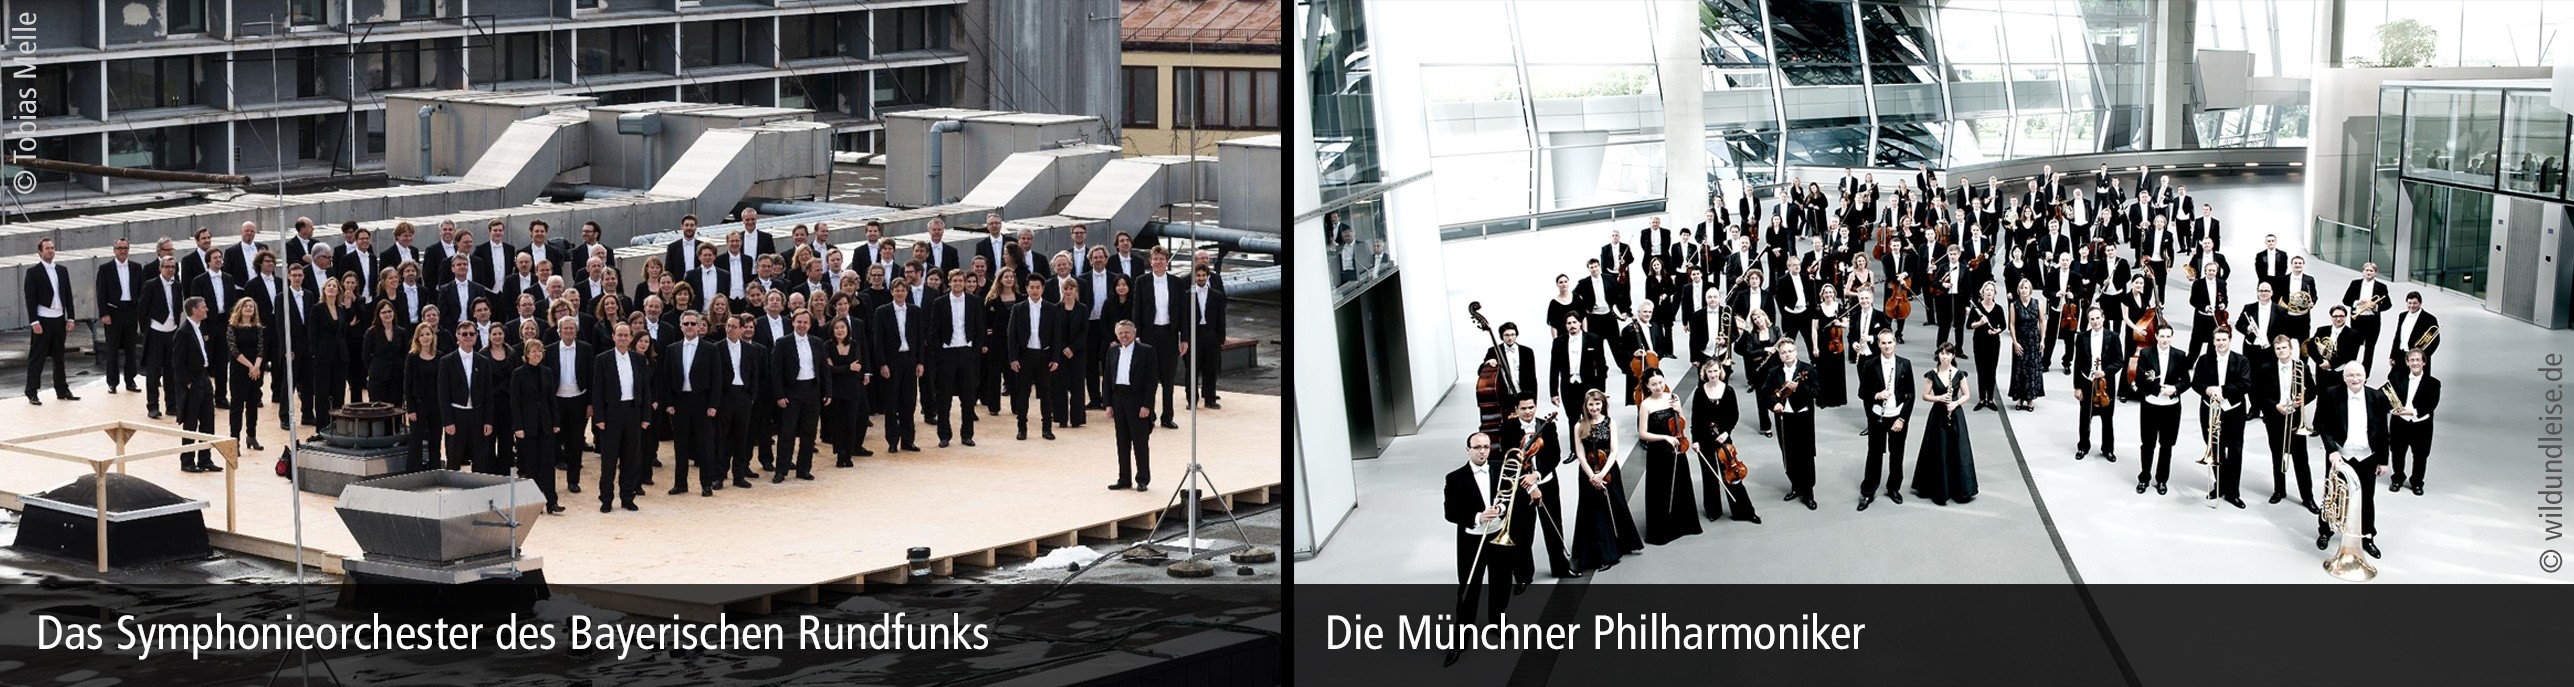 Symphonieorchester d. Bayerischen Rundfunks/Münchner Philharmoniker ©Tobias Melle/wildundleise.de